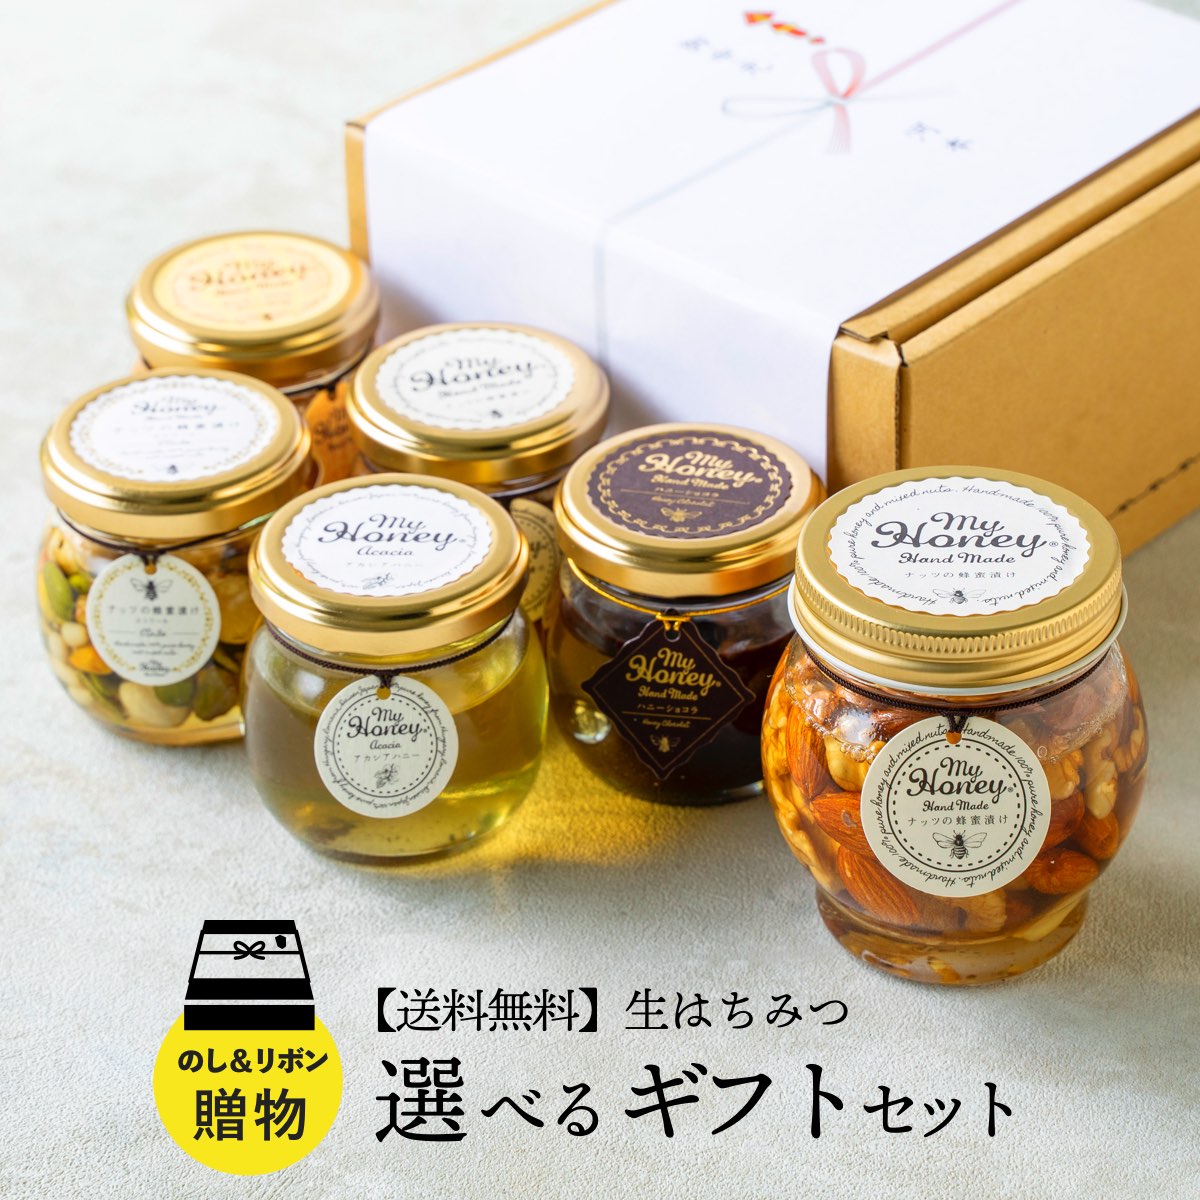 【送料無料】 MYHONEY マイハニー ギフト 3個詰め合わせ ナッツの蜂蜜漬け 200g+選べる蜂蜜ギフトセット (Mサイズ) …